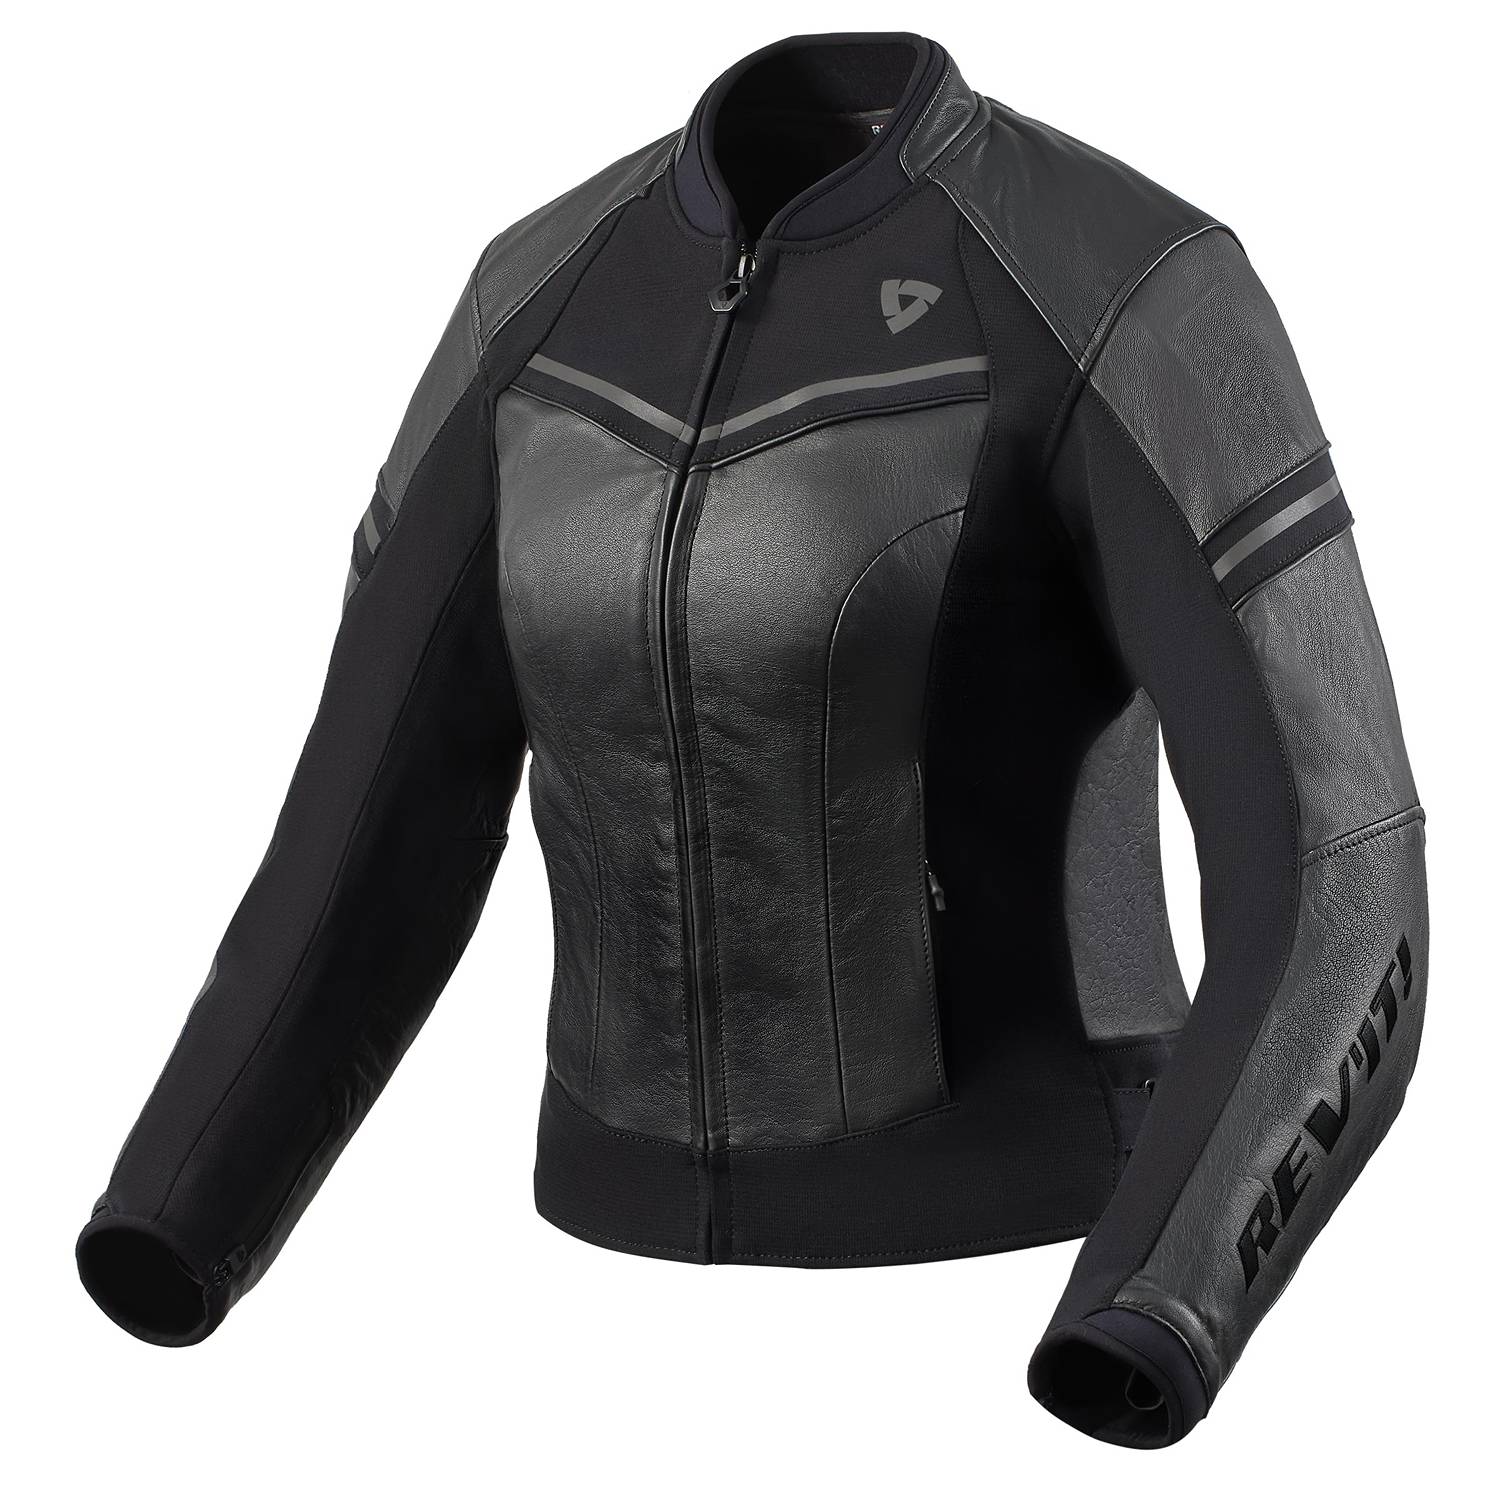 Image of REV'IT! Median Ladies Jacket Black Anthracite Size 40 EN